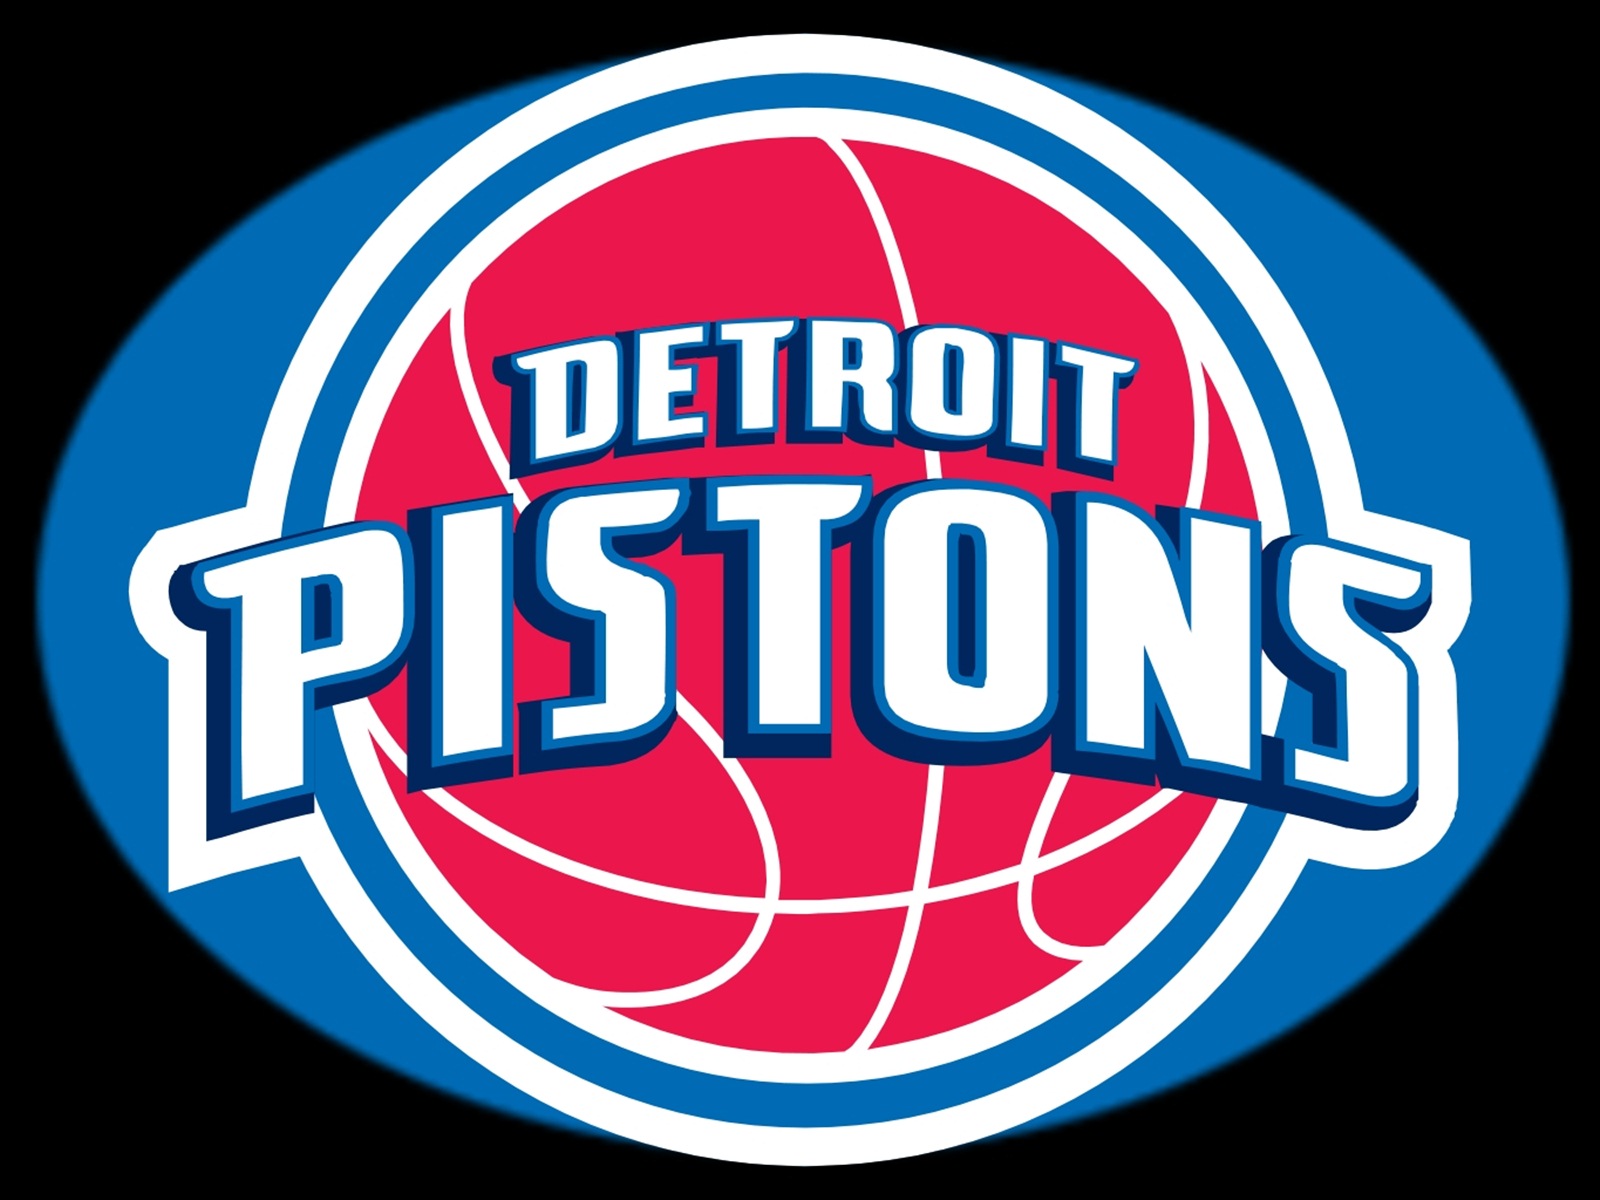 Detroit Pistons scores